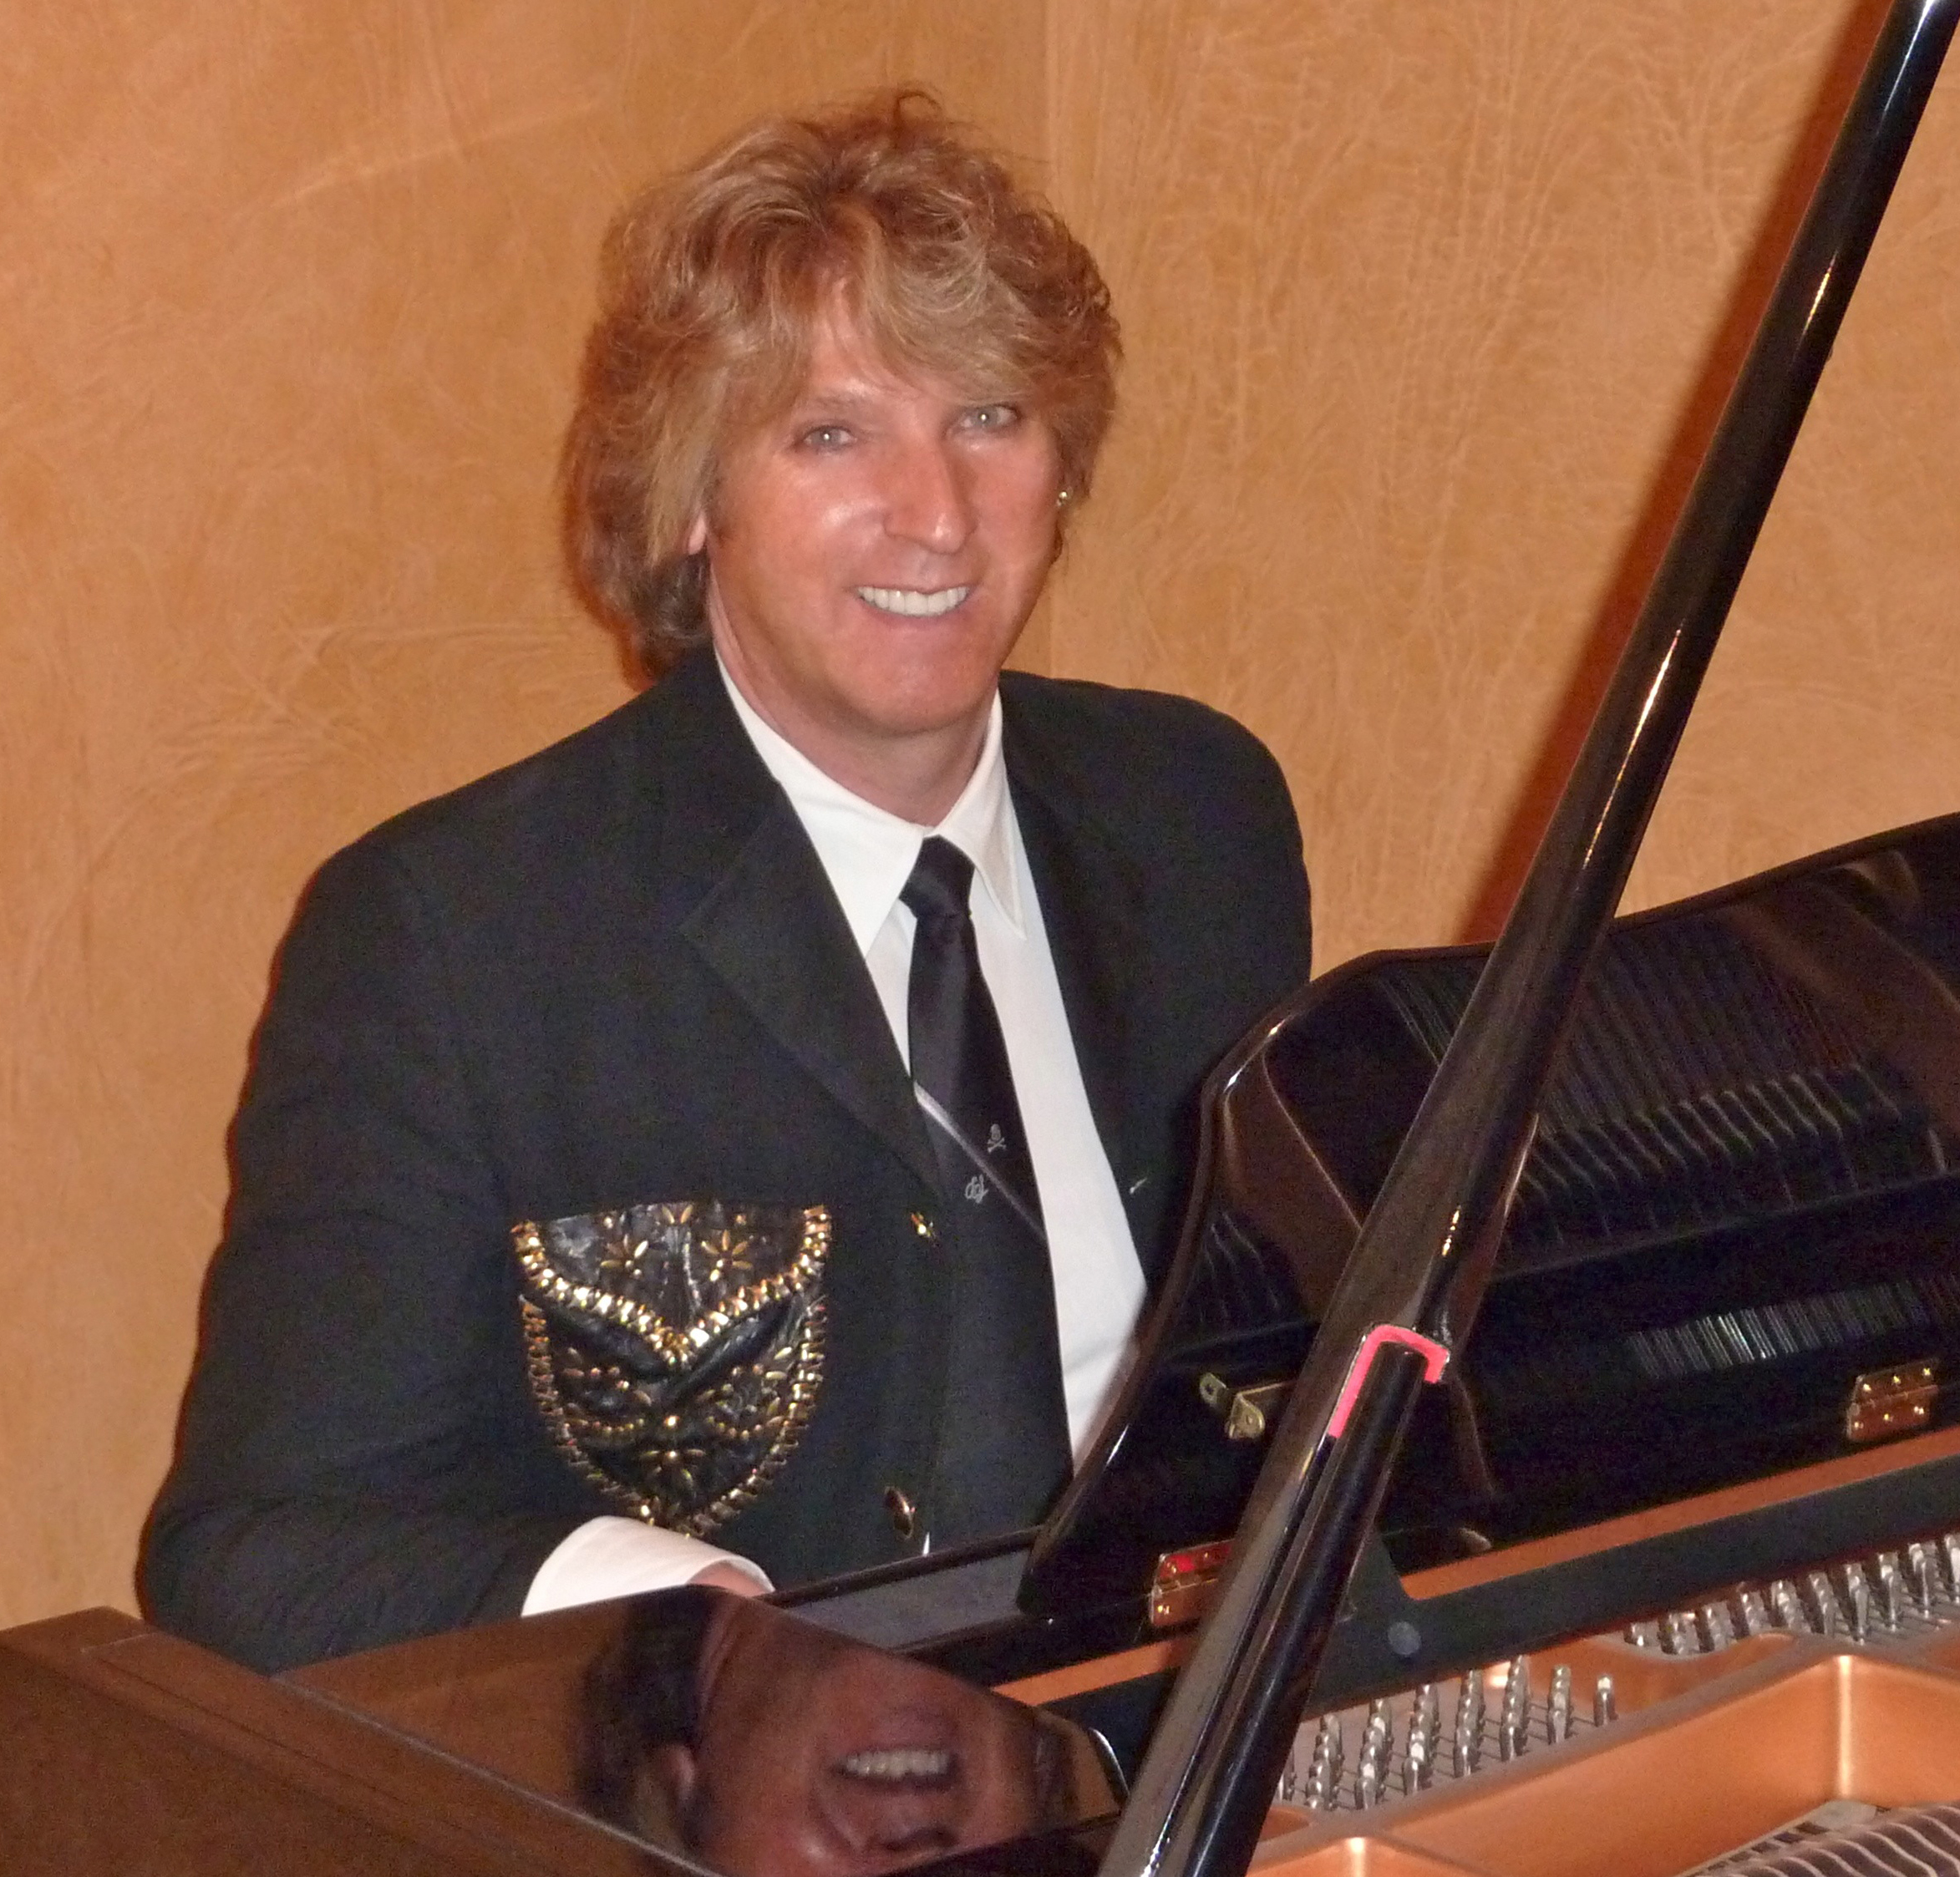 Michael Blakey at the piano